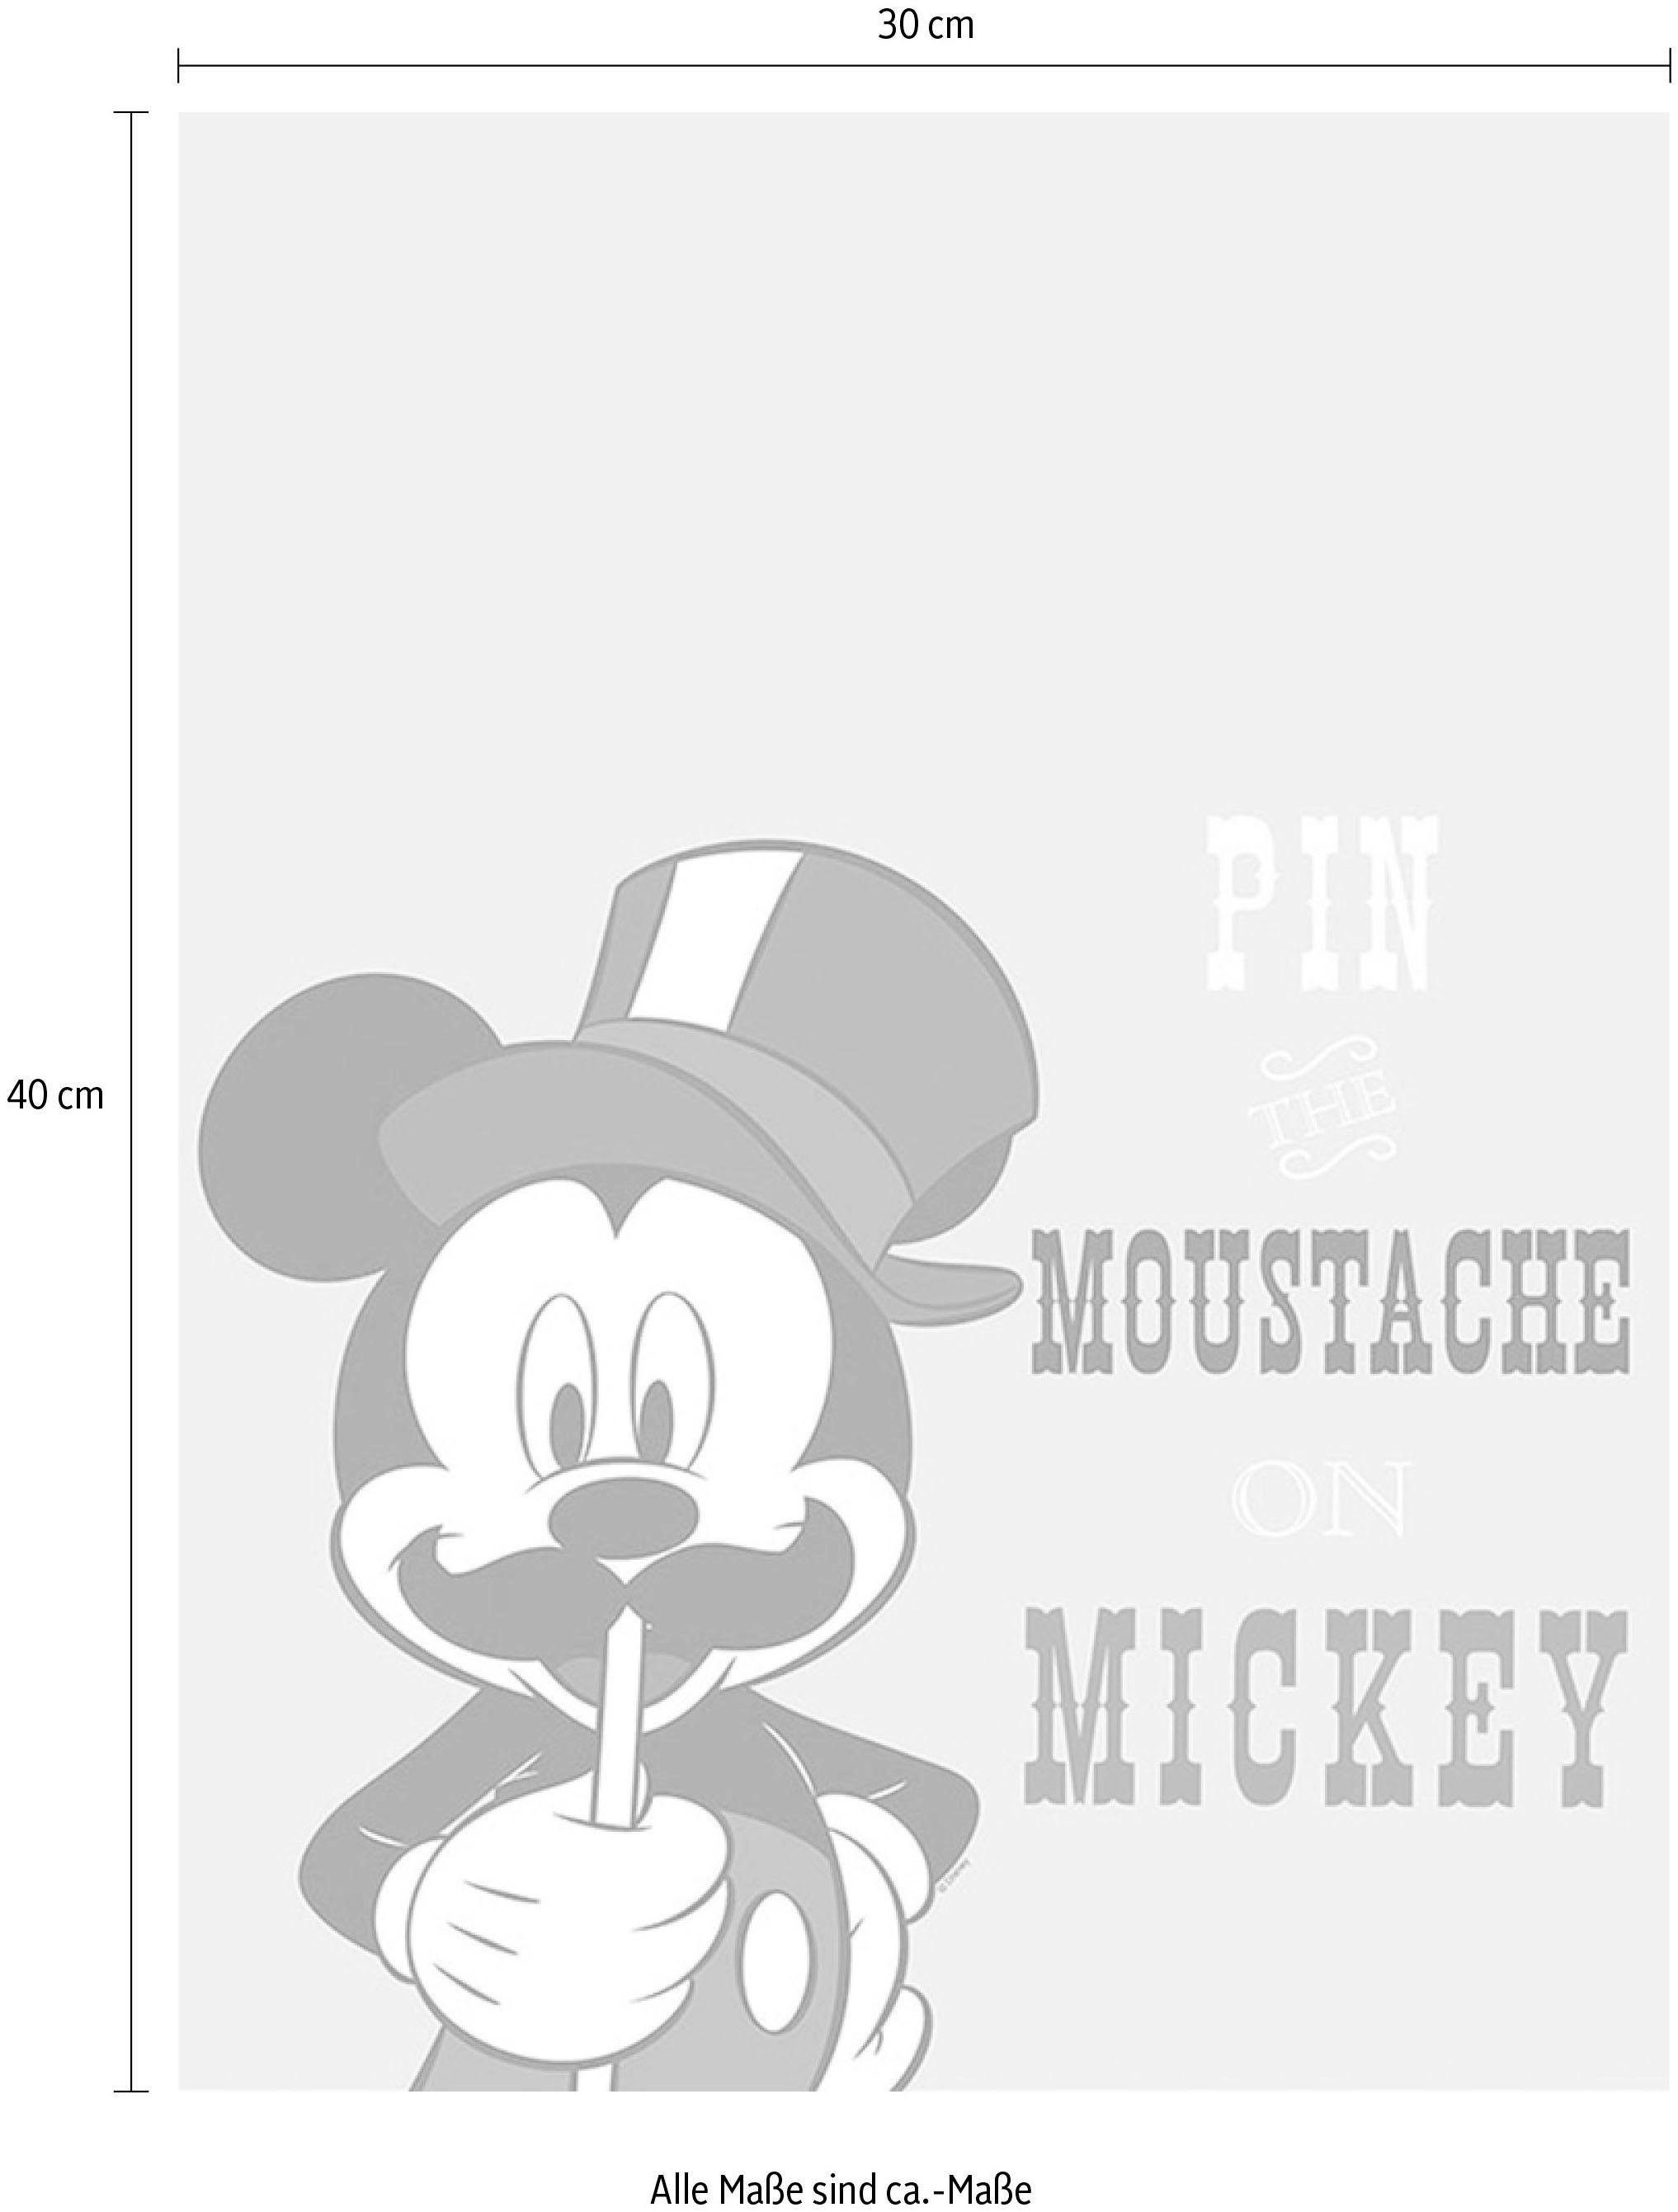 Kinderzimmer, Schlafzimmer, Mickey (1 Mouse St), Wohnzimmer Moustache, Poster Komar Disney